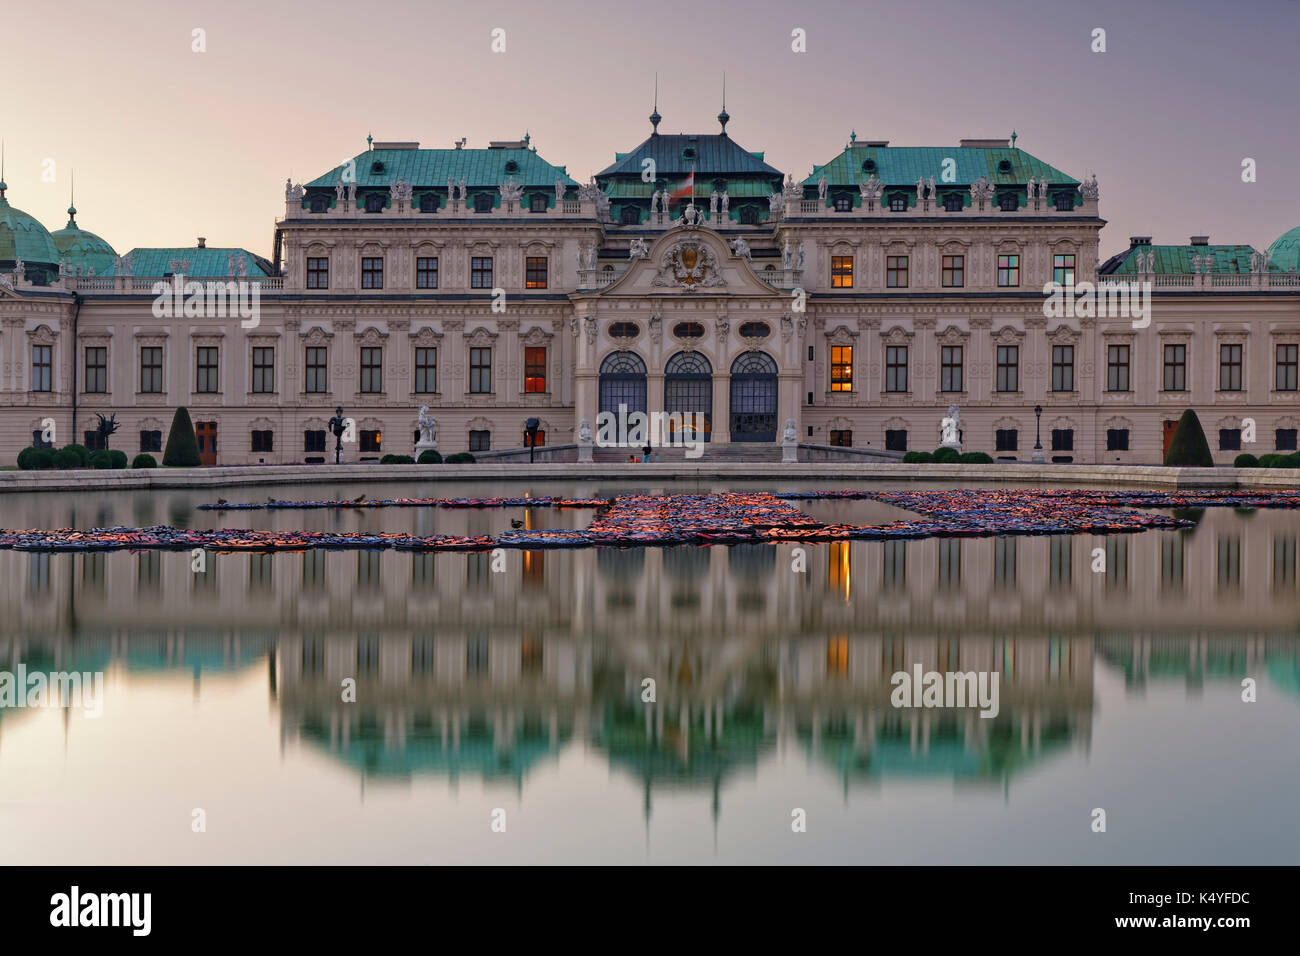 El castillo de Belvedere y fuente con reflexión, Viena, Austria Foto de stock